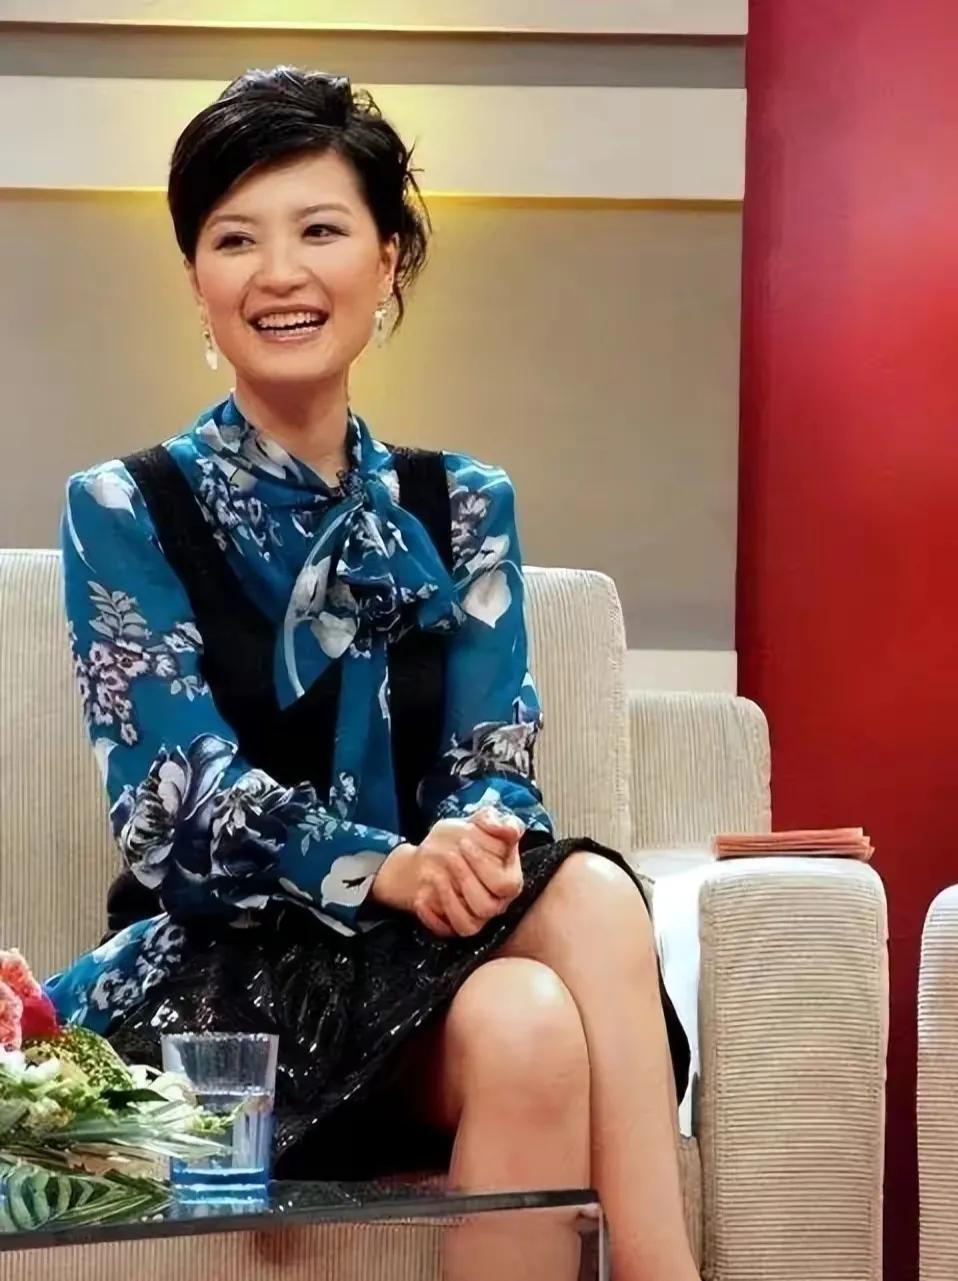 东方卫视美女主持陈蓉,因丑闻被迫转幕后,恐无望回归前台主持